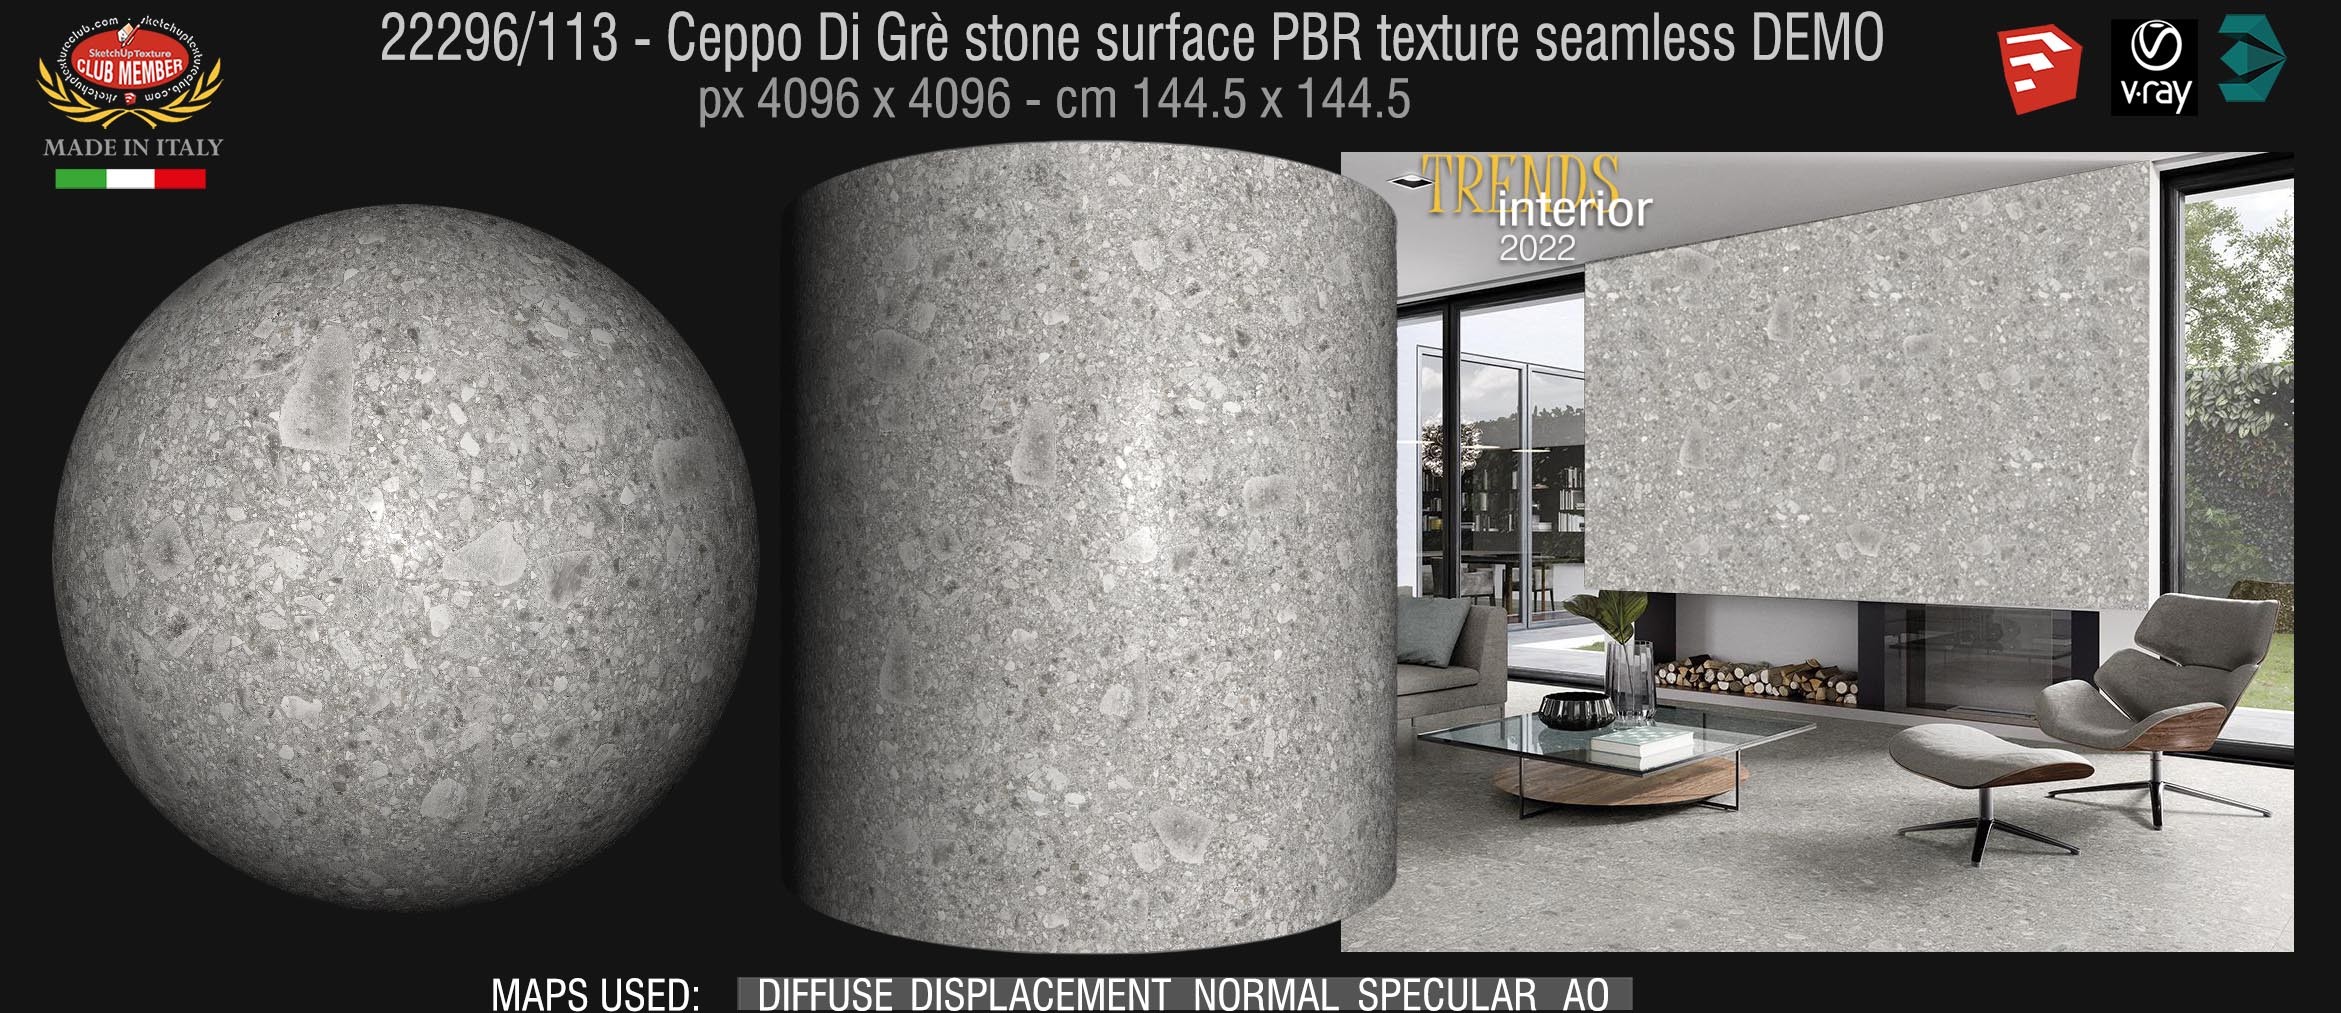 22296_113 Ceppo Di Grè stone surface PBR texture seamless DEMO